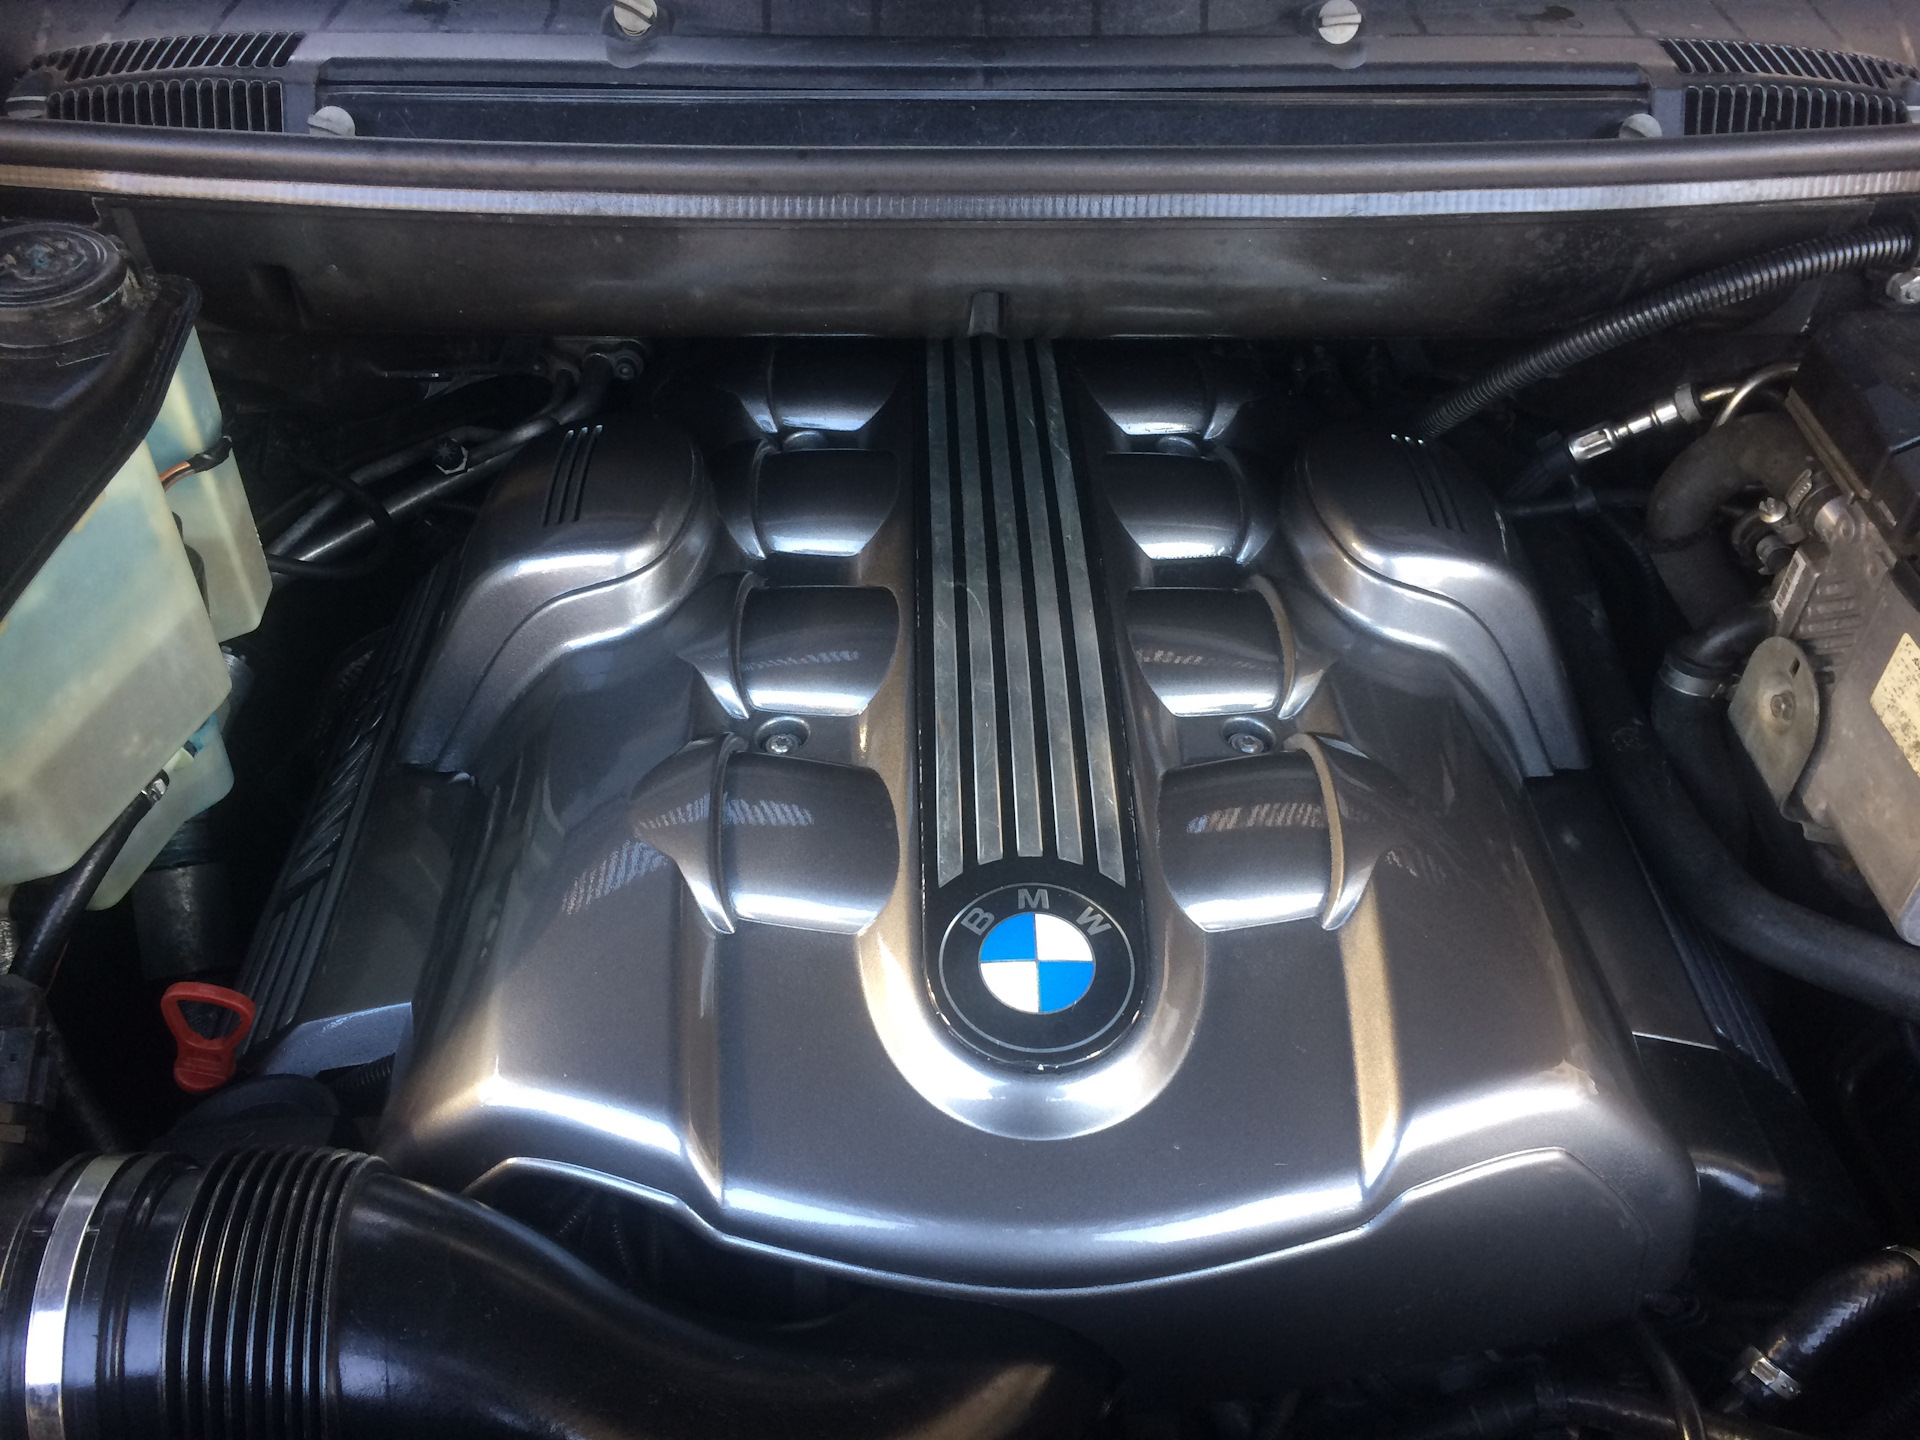 Свечи бмв х5 е53. BMW x5 e53 4.4 двигатель. Крышка двигателя BMW n53. Двигатель 4.4 БМВ х5 е53. BMW x5 f15 50i крышка мотора.